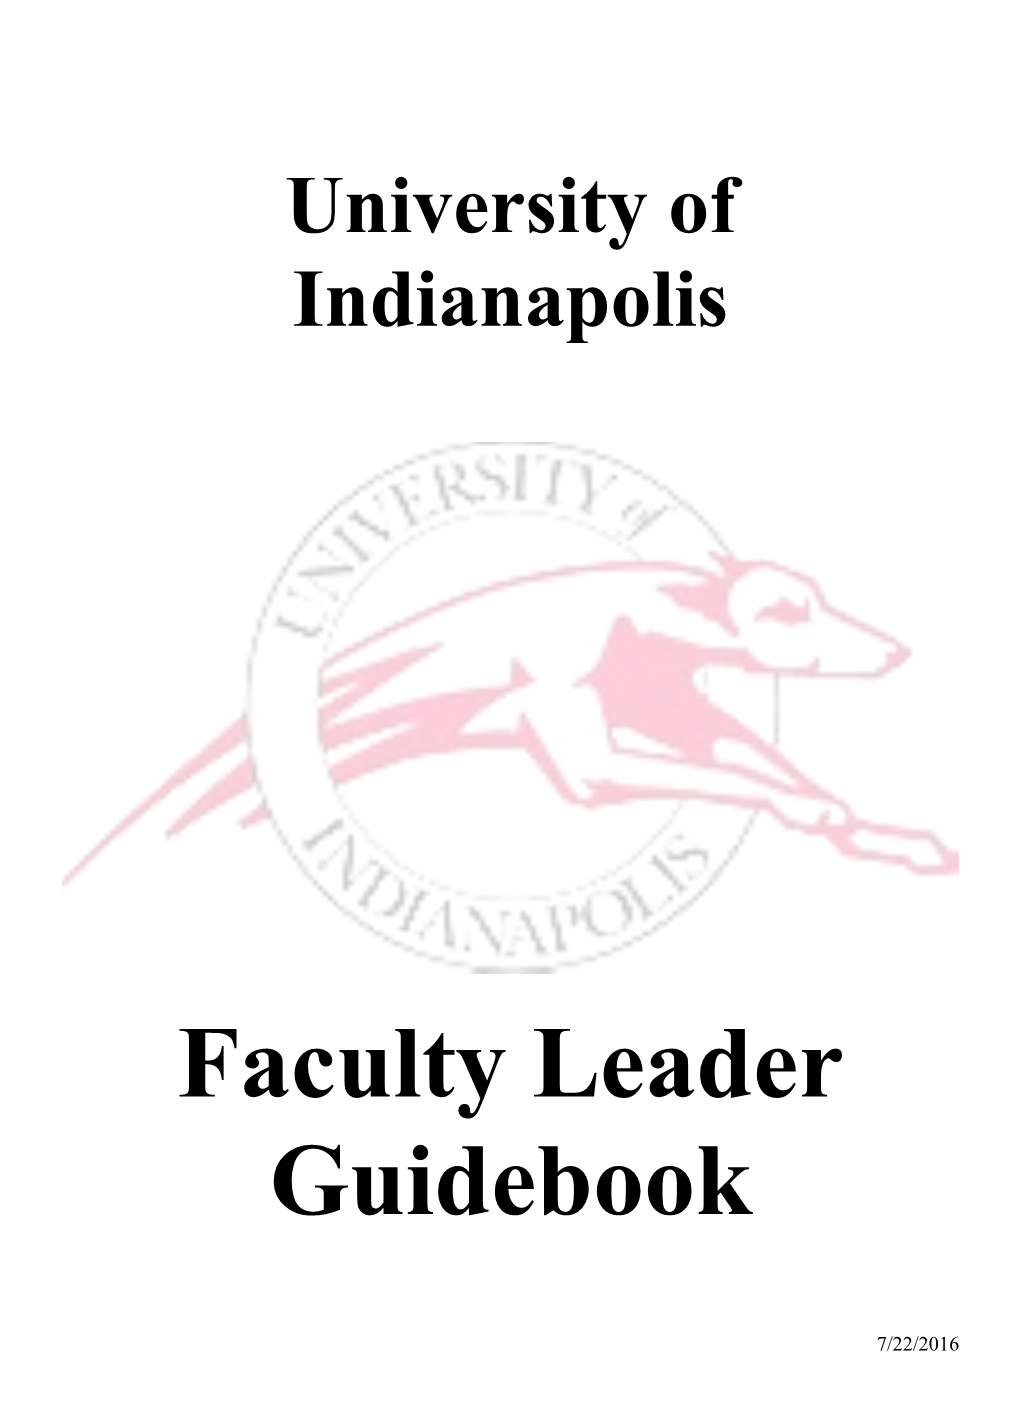 View Faculty Leader Guidebook